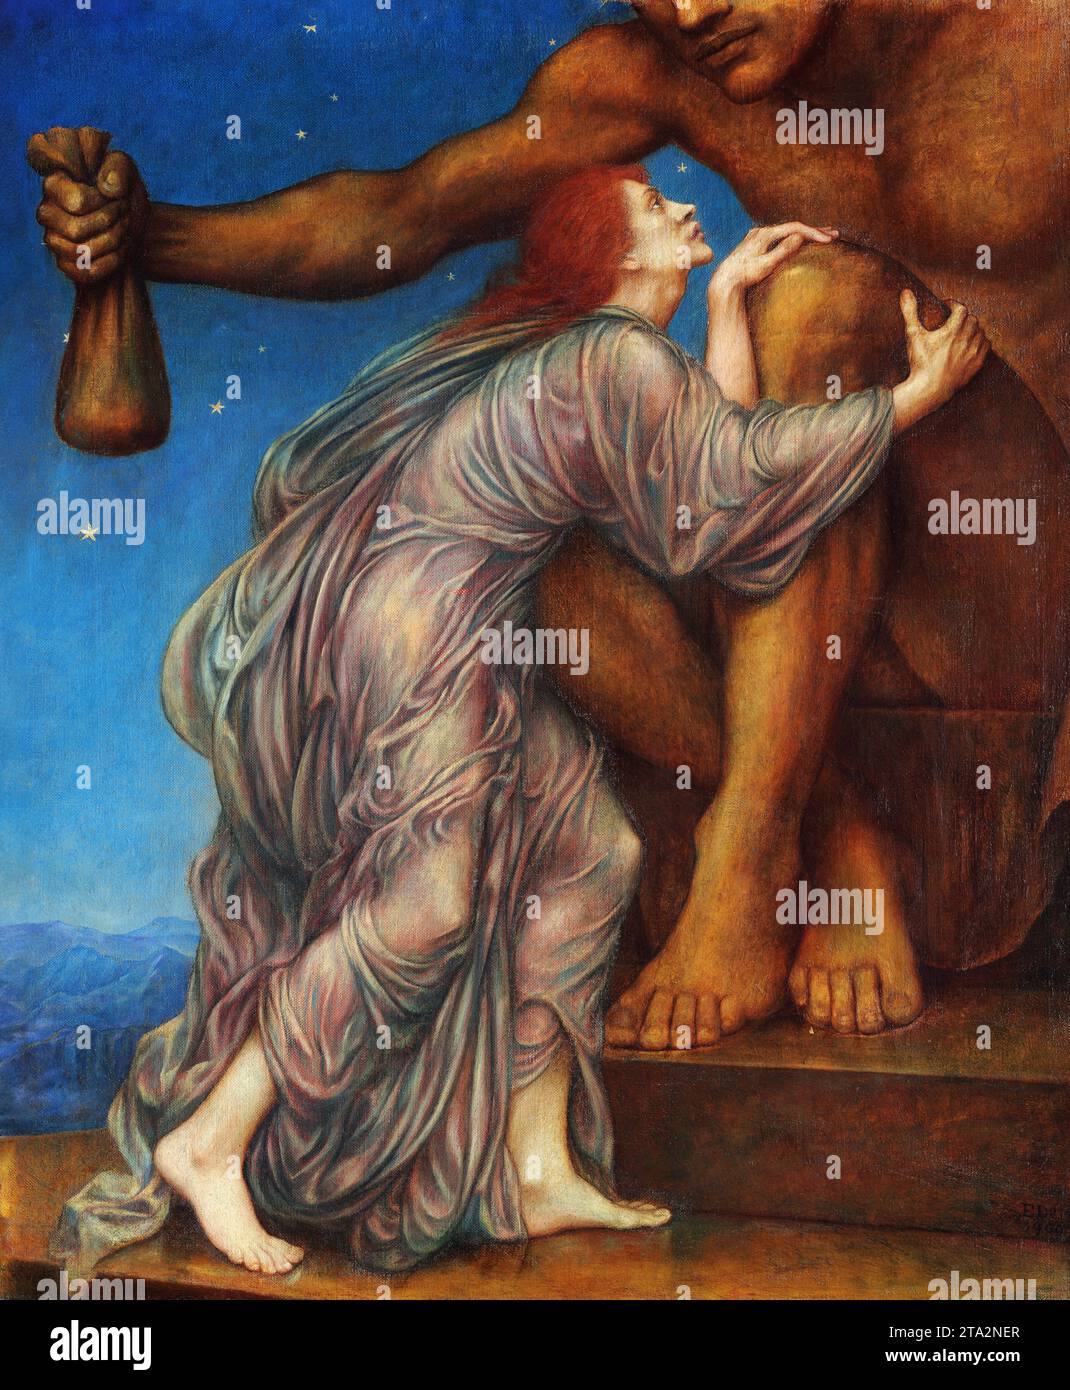 Evelyn de Morgan. Gemälde mit dem Titel The Worship of Mammon von der englischen Künstlerin Evelyn de Morgan (1855–1919), 1909 Stockfoto